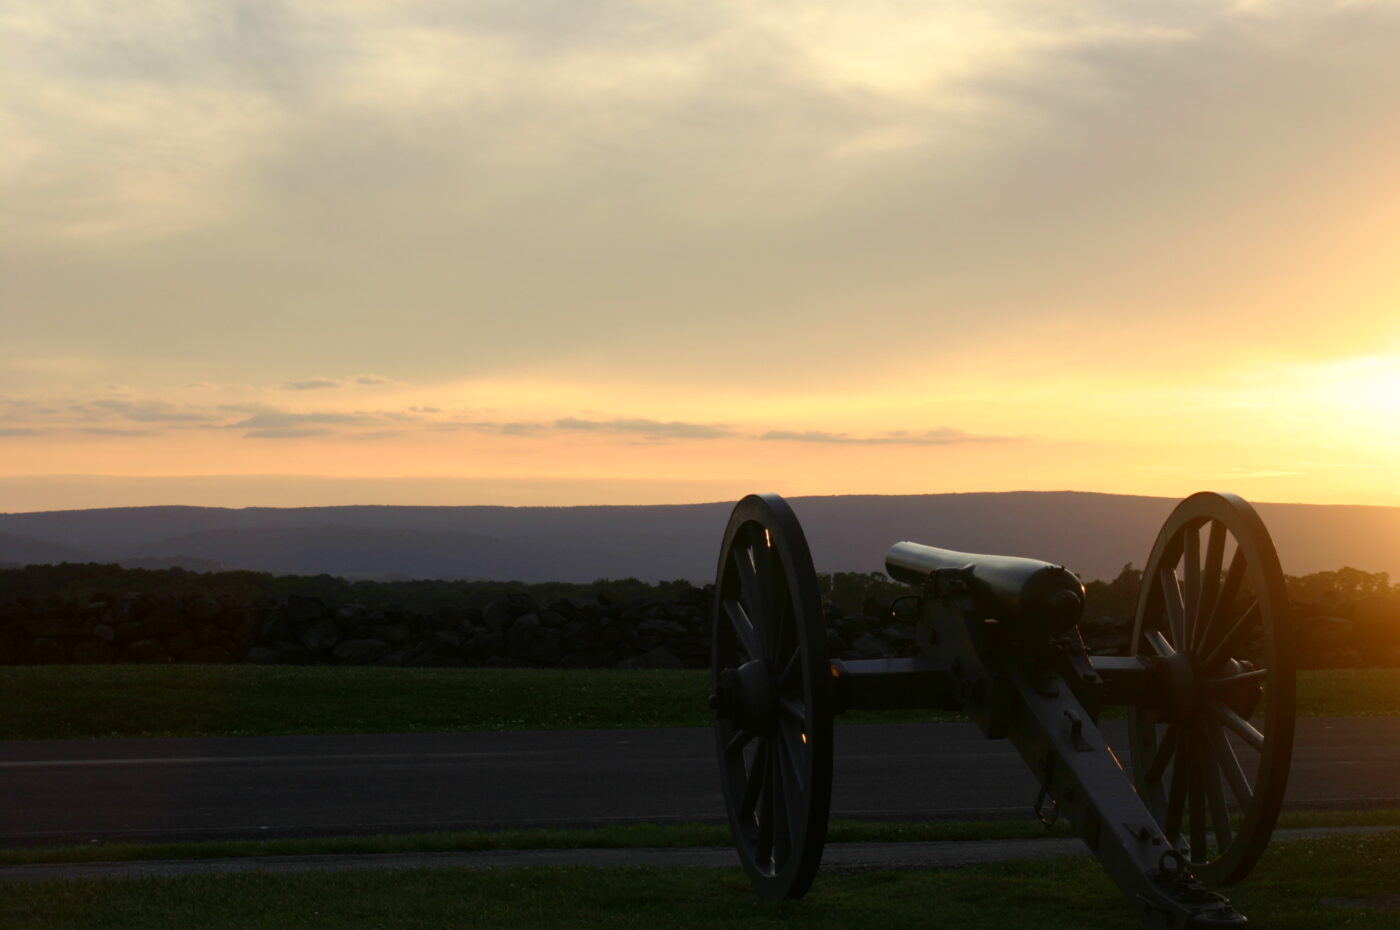 gettysburg by night